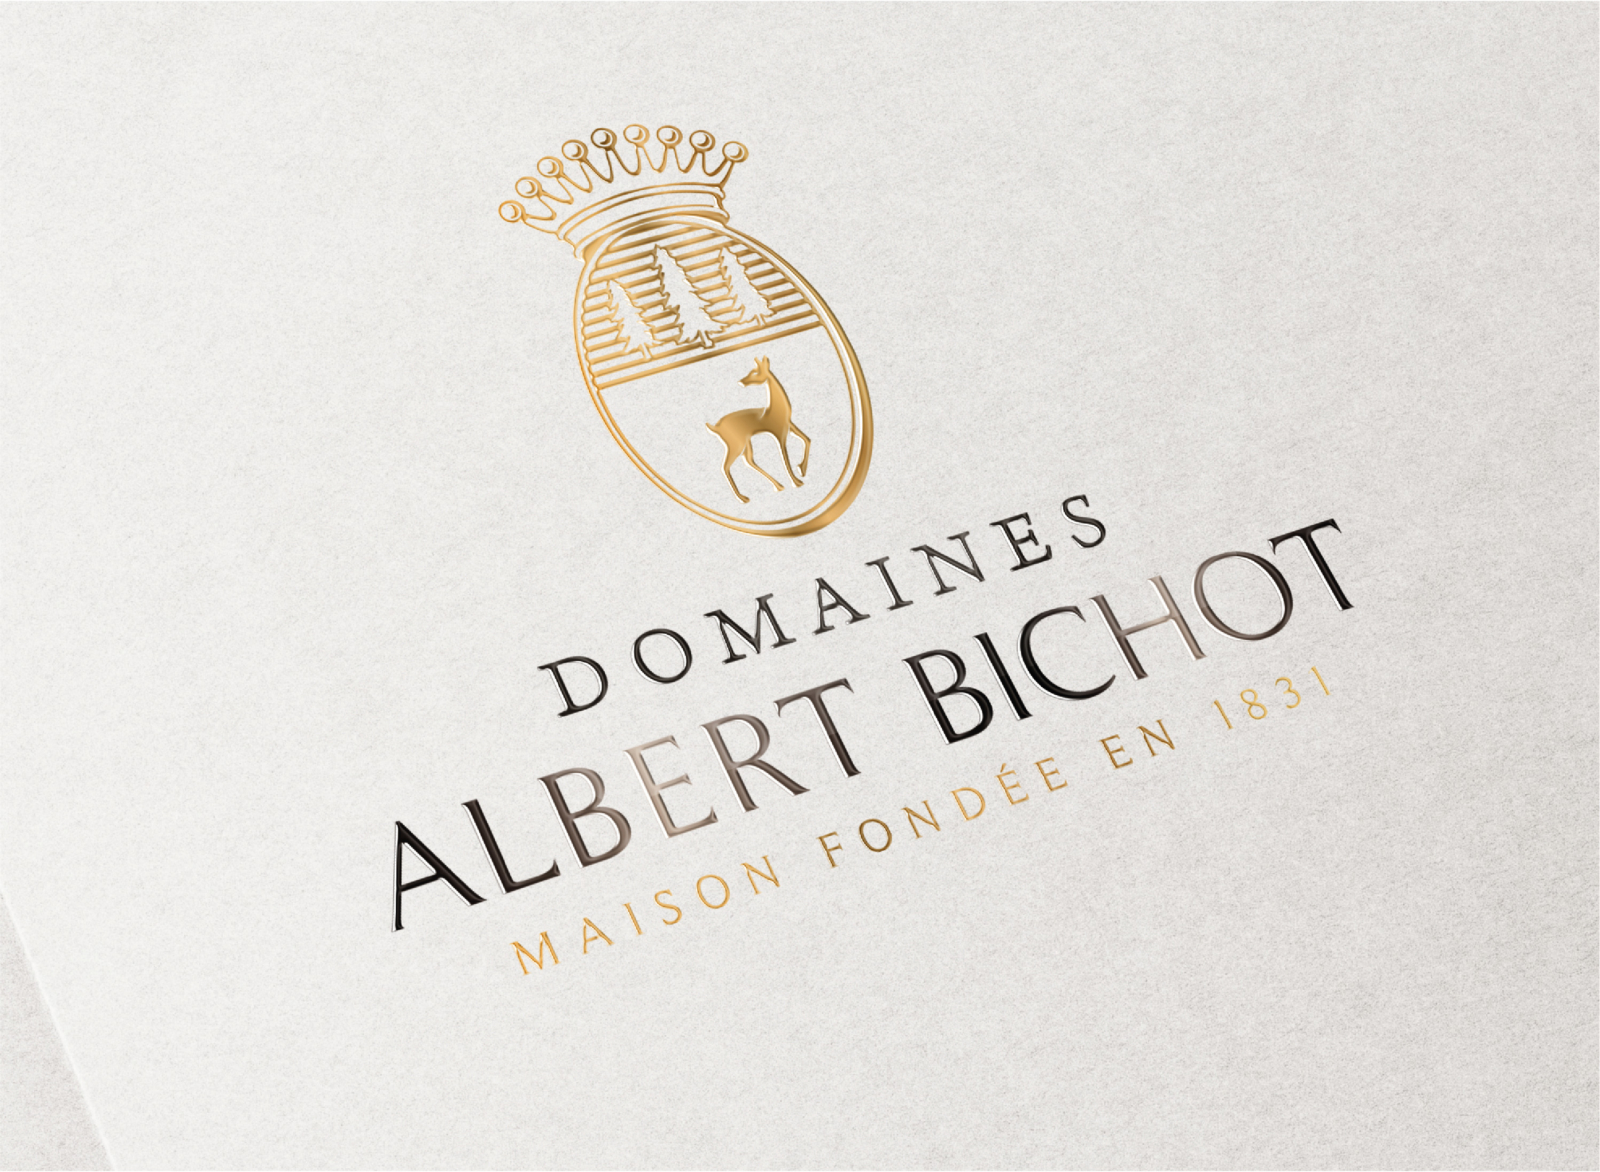 ALBERT BICHOT - Un design pensé par l’agence de design de Paris Partisan du Sens.